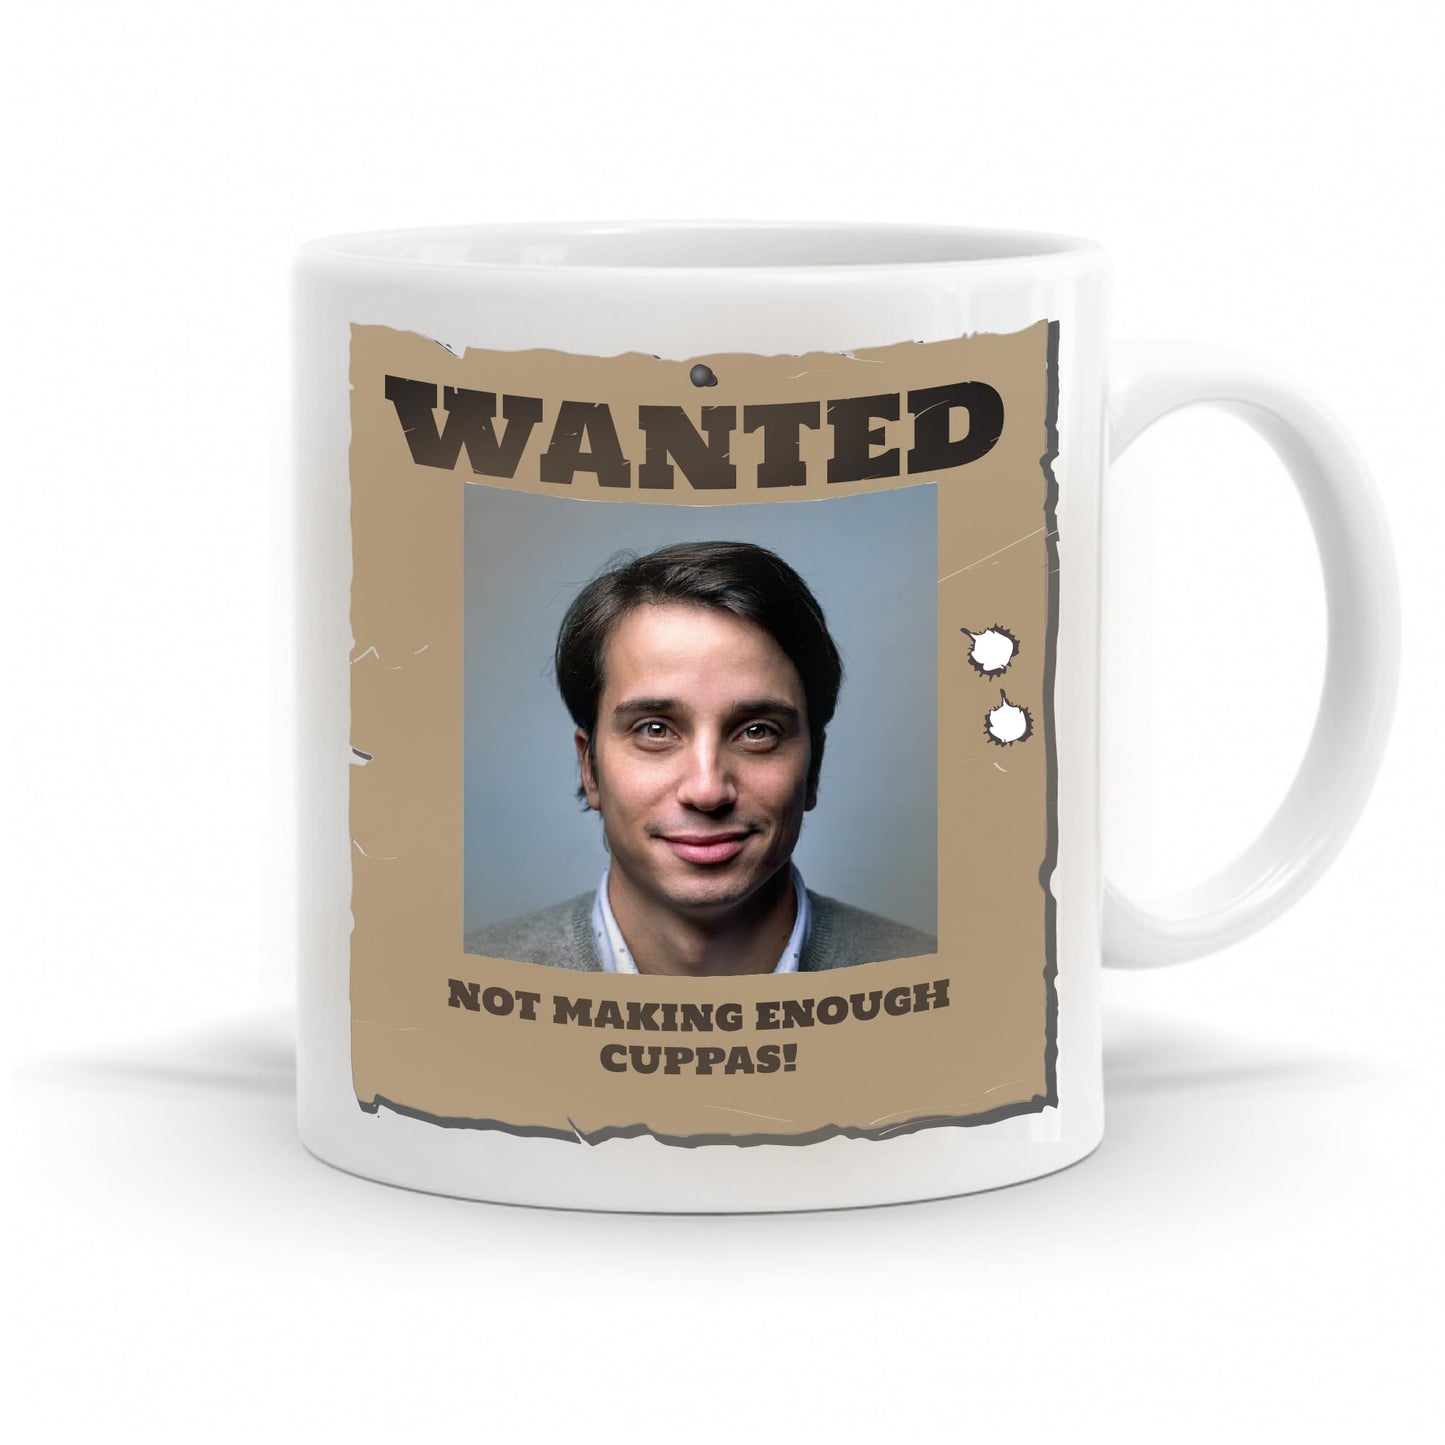 Personalised Wanted Poster mug.